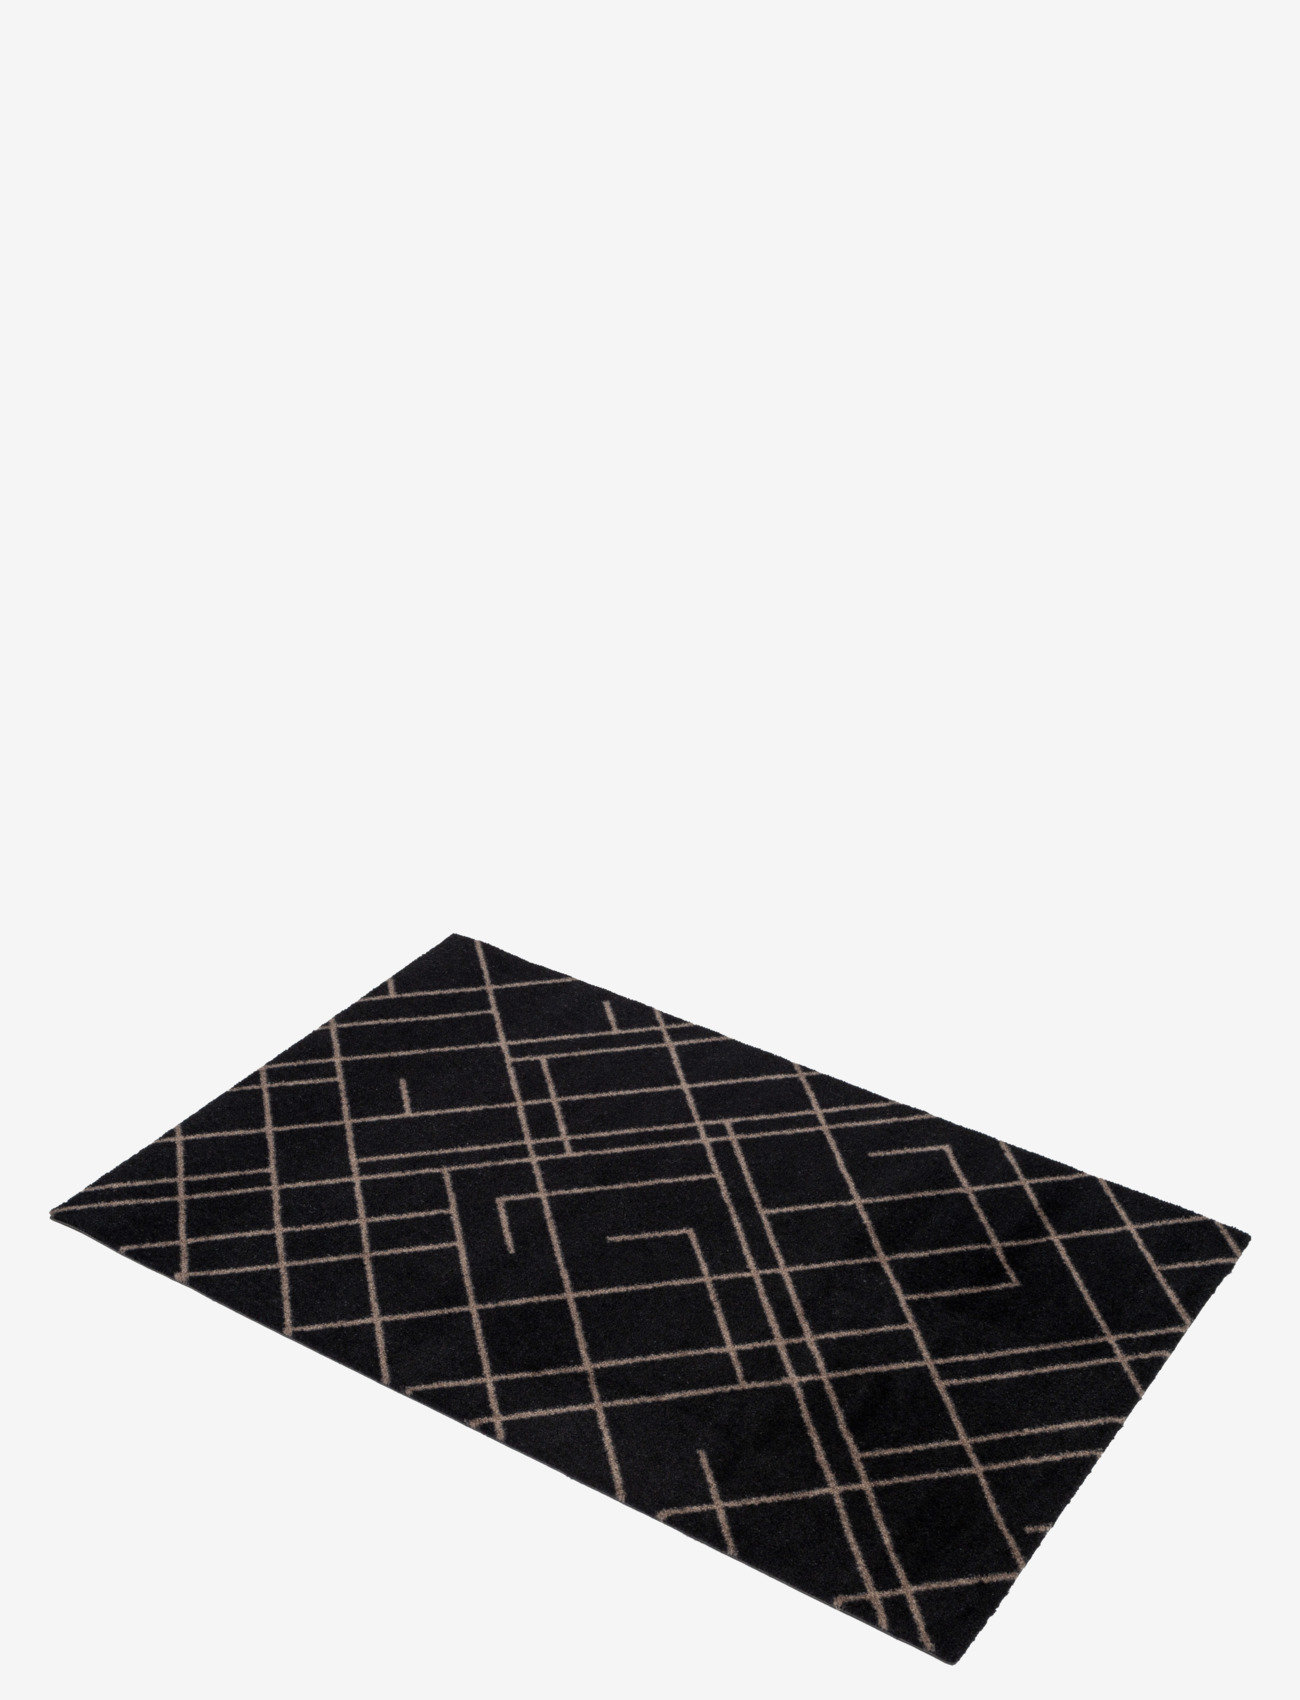 tica copenhagen - Floormat polyamide, 90x60 cm, lines design - doormats - sand/black - 1